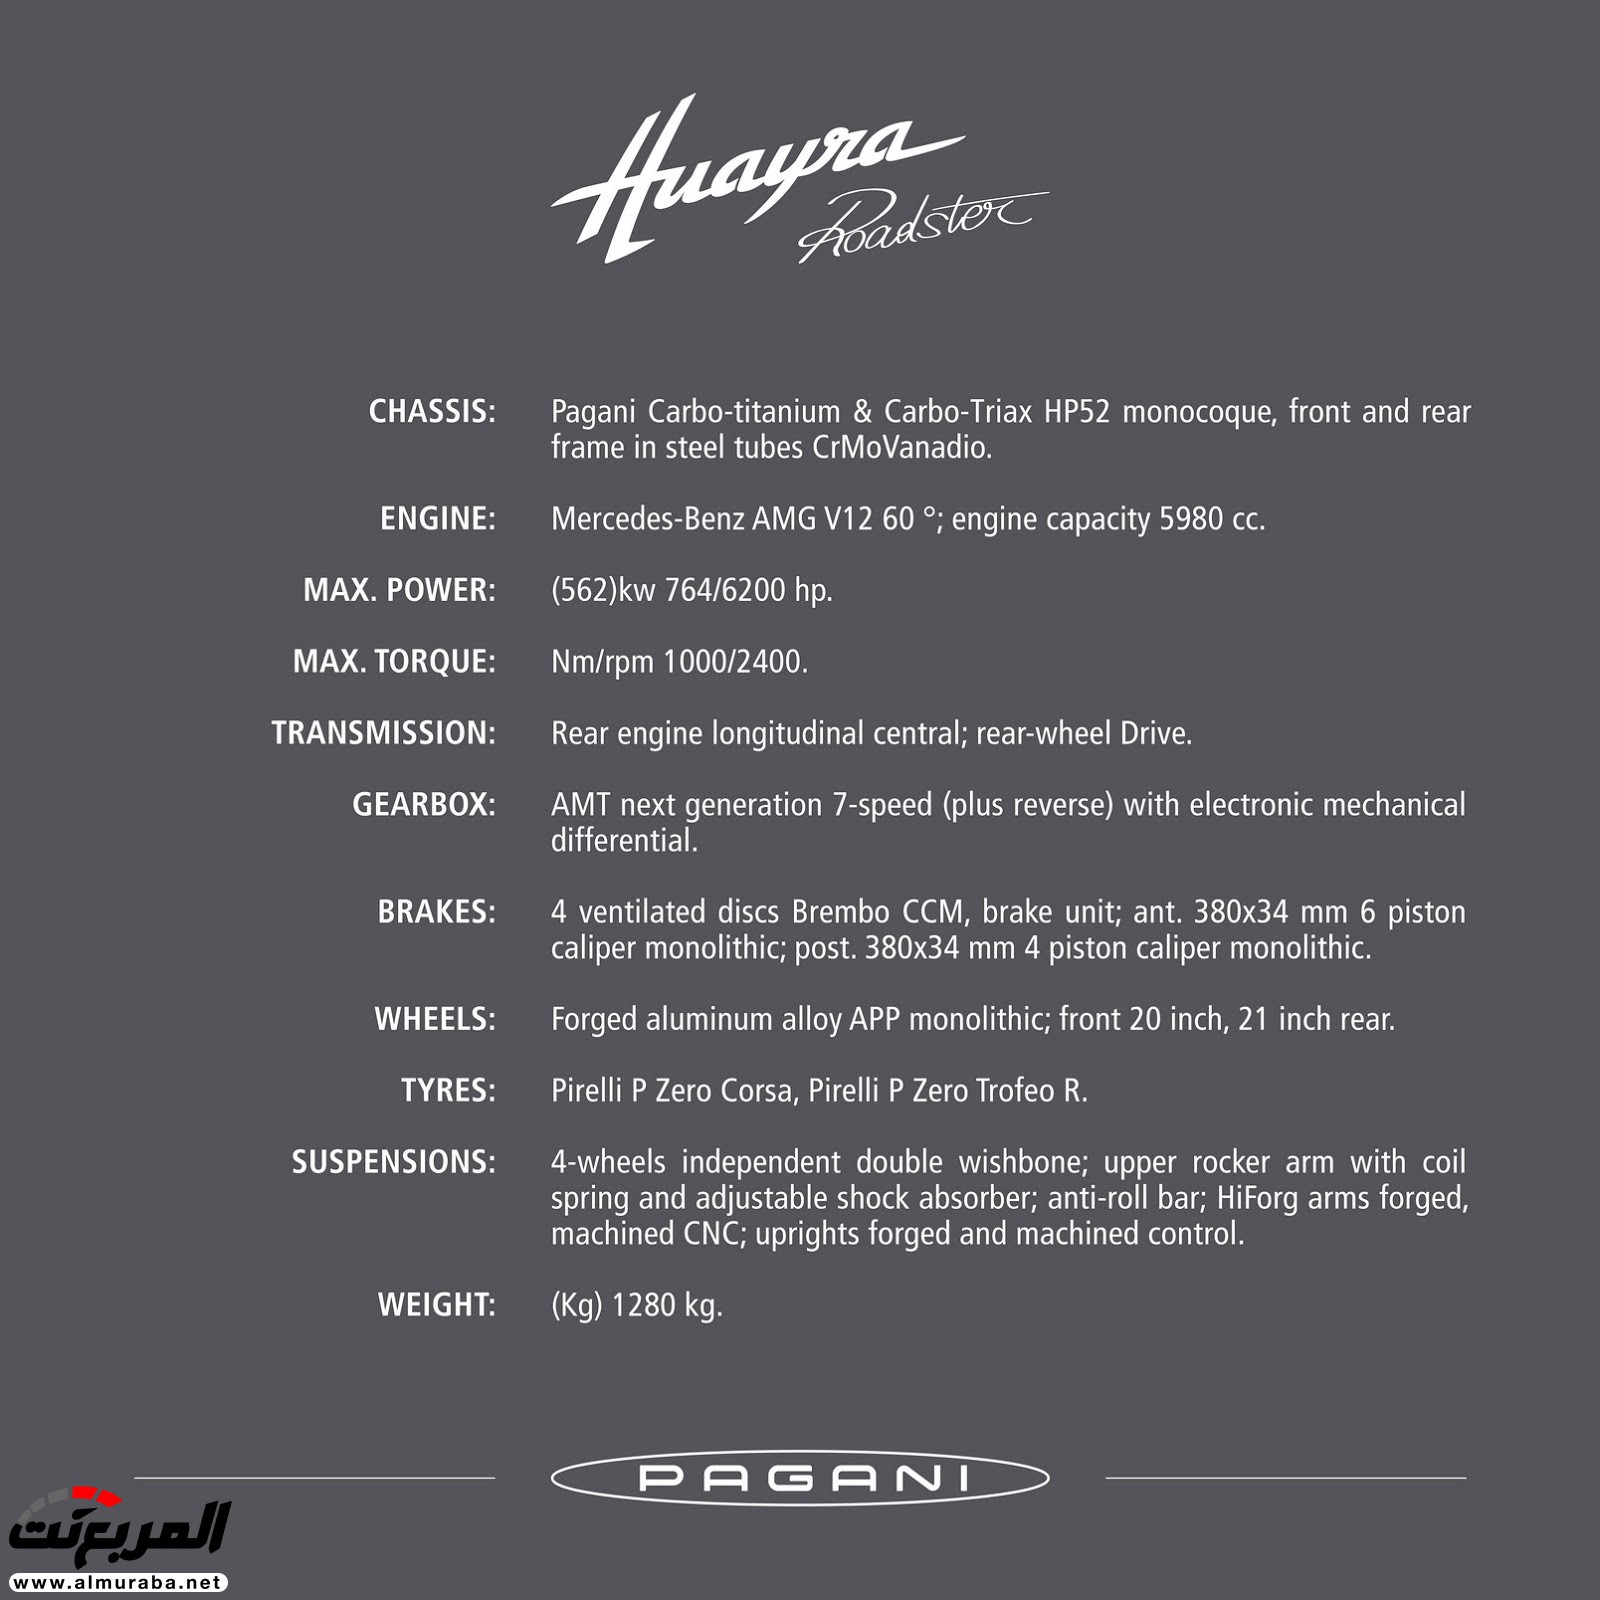 "باجاني" هوايرا رودستر يكشف عنها متألقة بسقف مكشوف وقوة 754 حصان Pagani Huayra Roadster 57